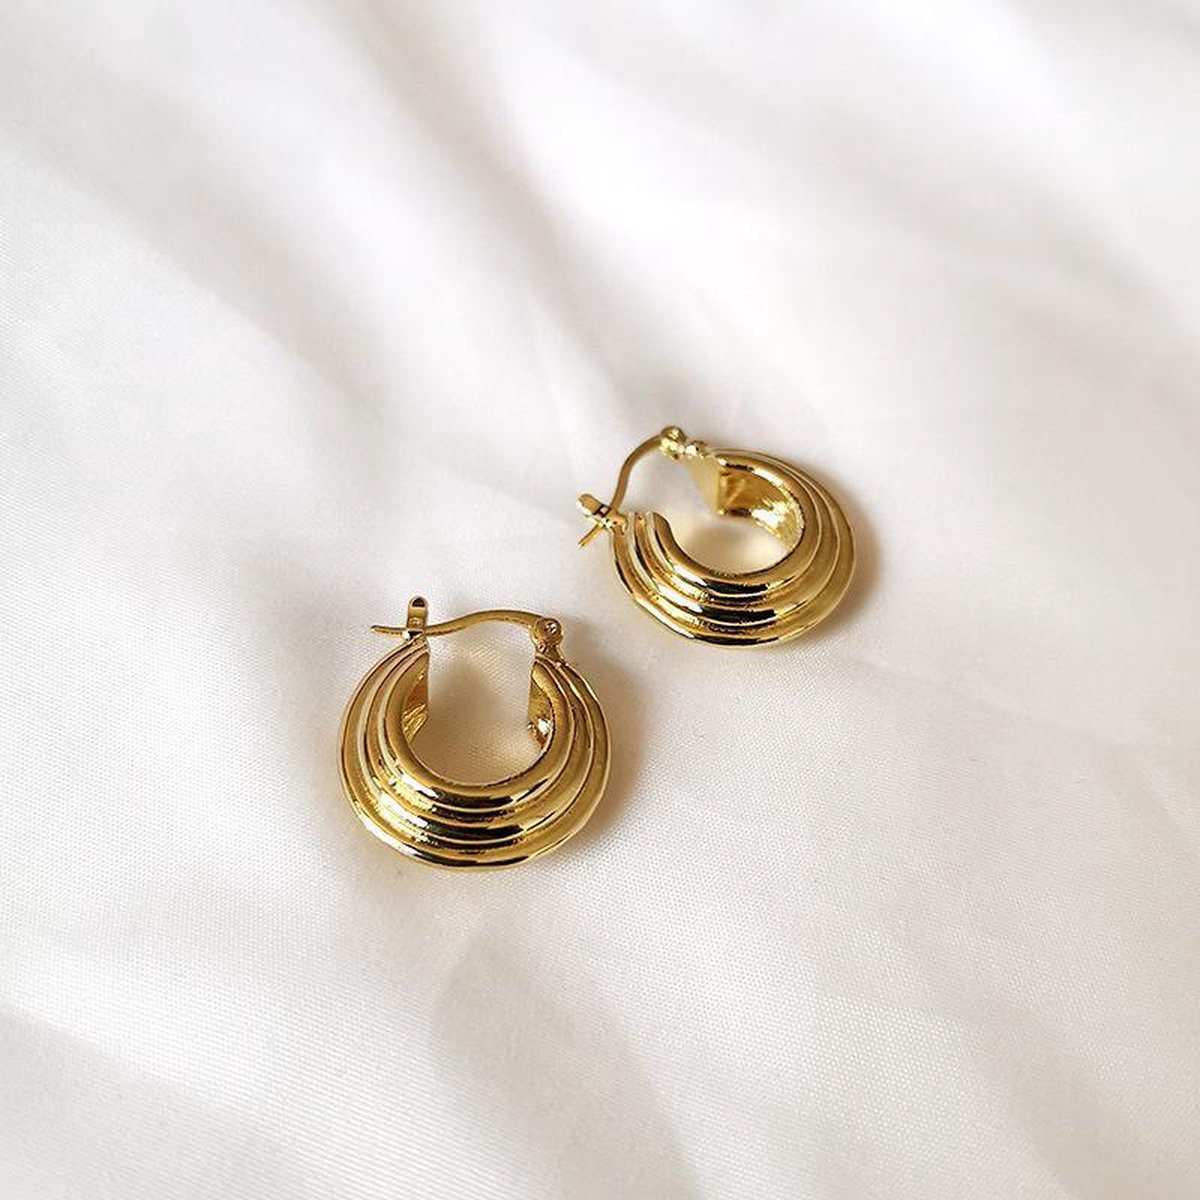 Jobo By JET - Pretty earrings - Gold - Gouden oorbellen - Small earrings